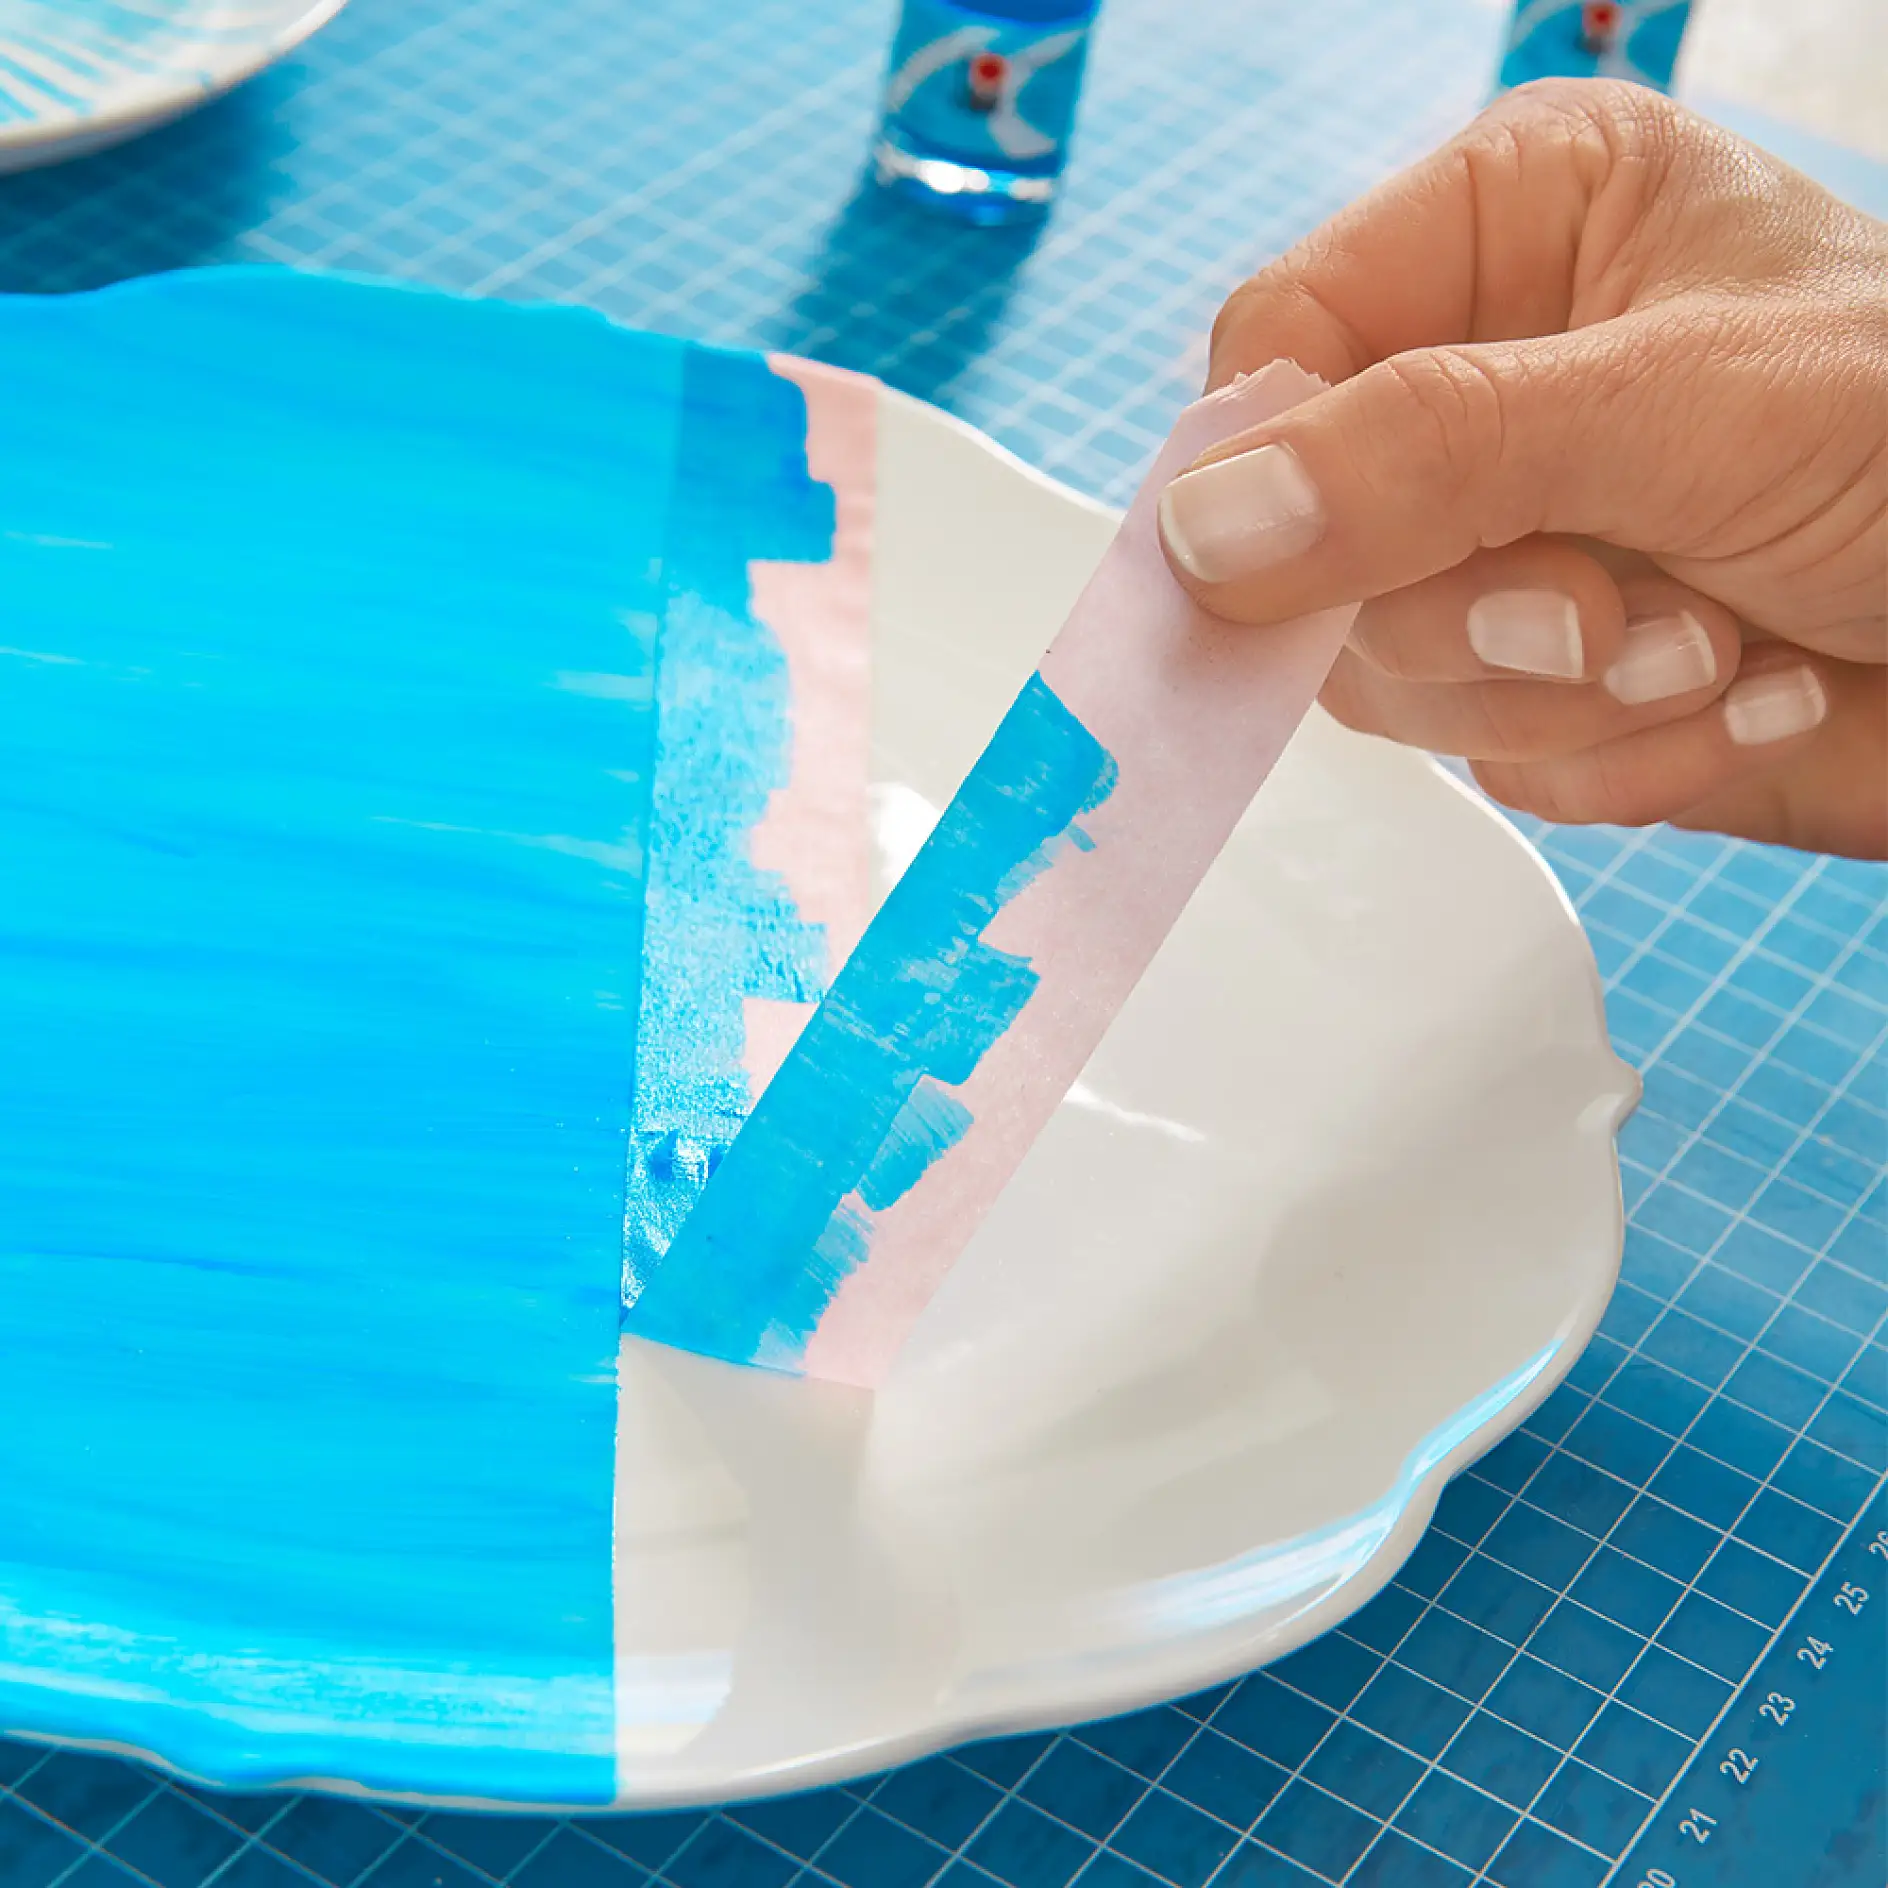 Χρησιμοποιήστε ταινία μασκαρίσματος για να φτιάξετε μια σύνθεση από DIY διακοσμητικά πιάτα τοίχου.